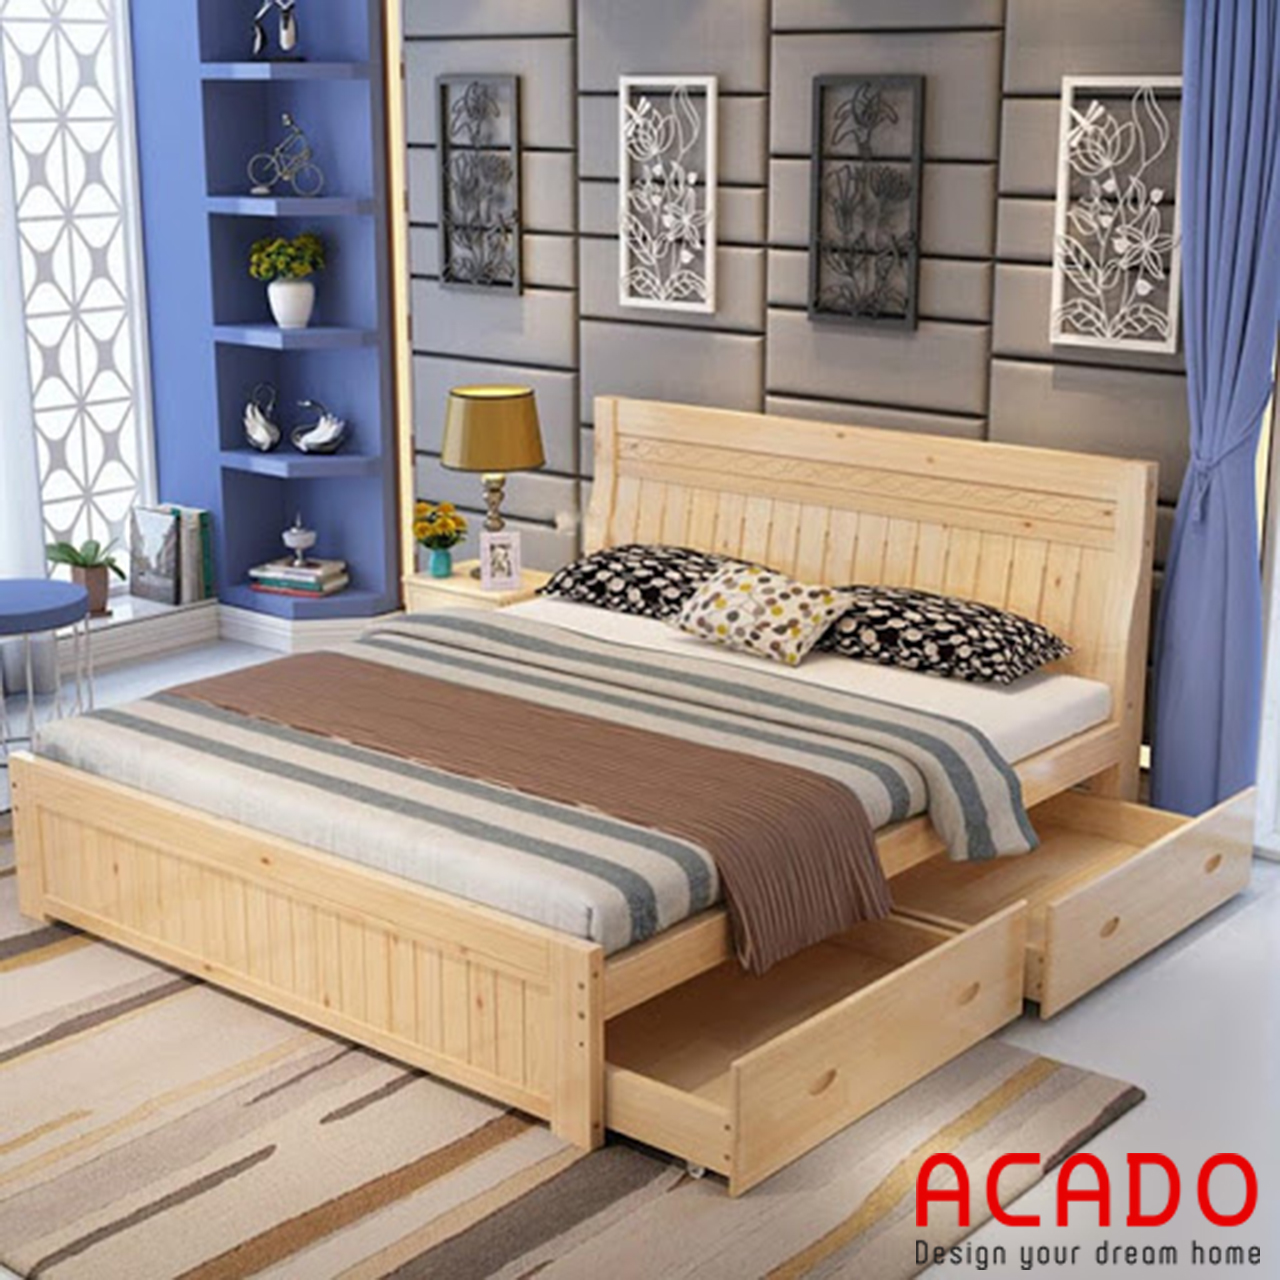 Giường ngủ gỗ sồi nga tự nhiên màu vàng nhạt đẹp, độ bền khá cao, giường ngủ cho chung cư